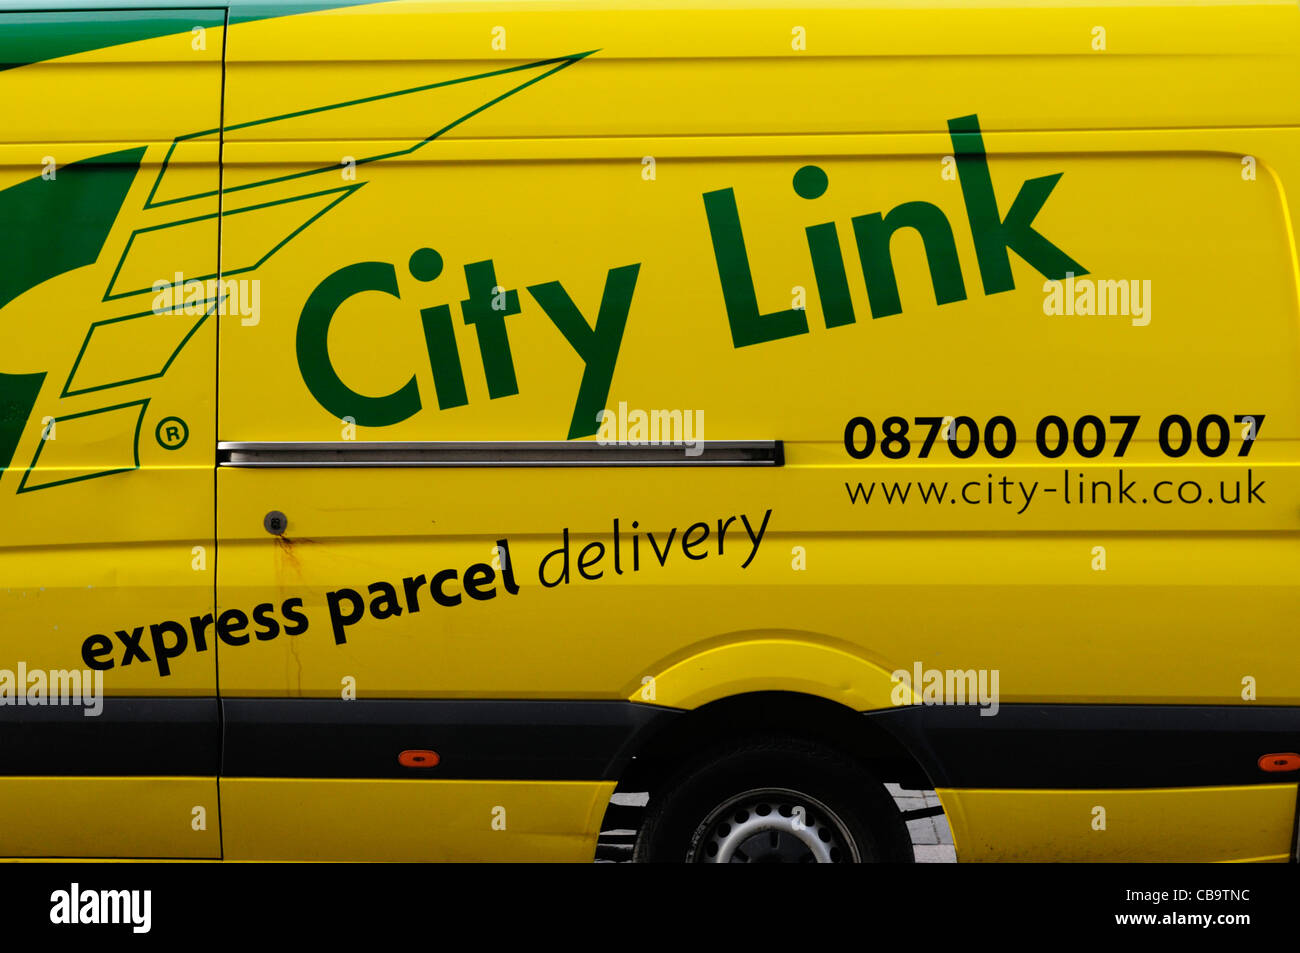 Livraison de colis express City Link Van, Cambridge, England, UK Banque D'Images